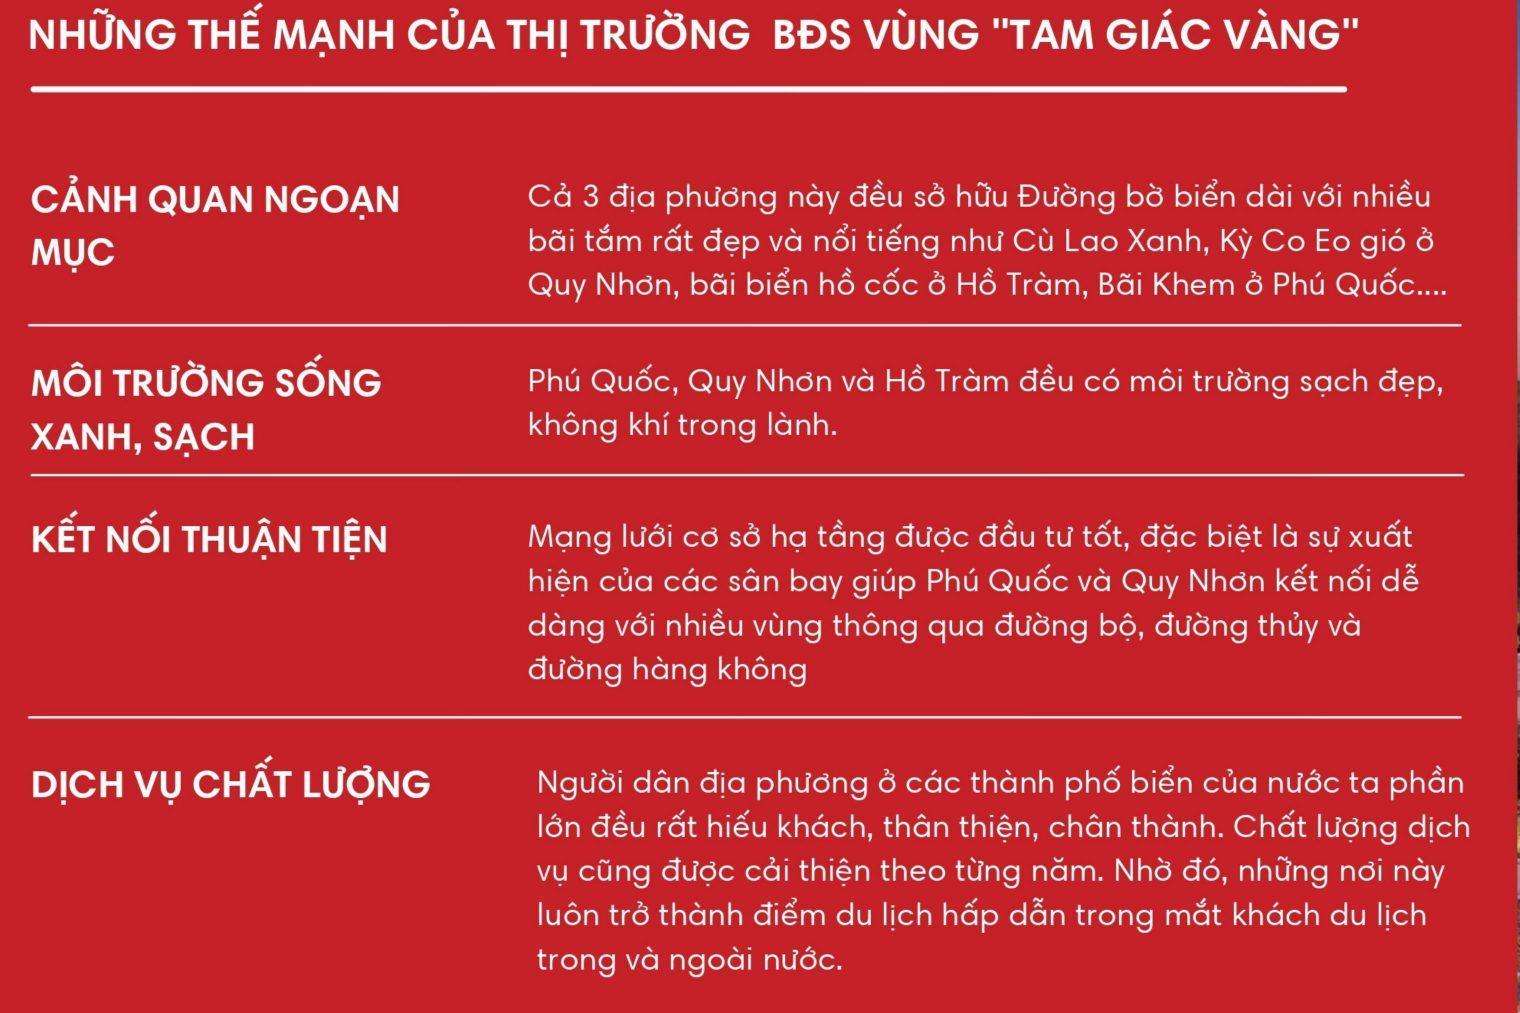 You are currently viewing Khoanh vùng “Tam Giác Vàng” bất động sản nghỉ dưỡng Việt Nam